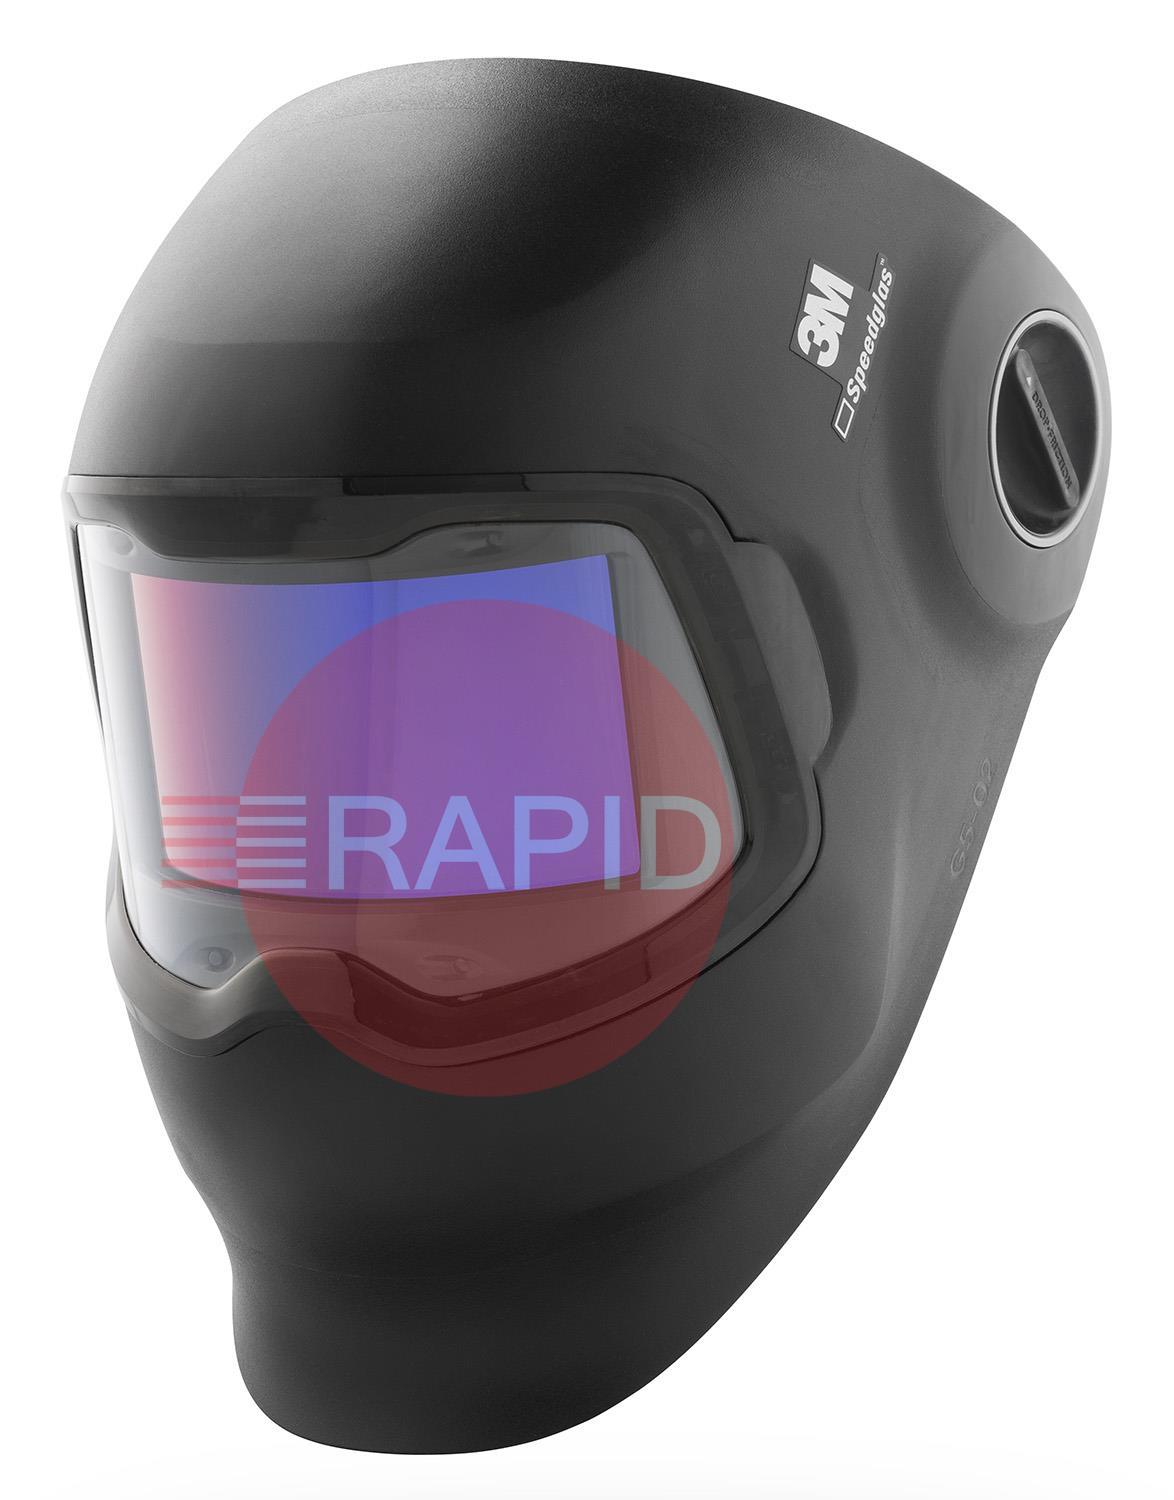 3M-621120  3M Speedglas G5-02 Welding Helmet with Curved Auto Darkening Filter Lens, Variable Shades 8-12